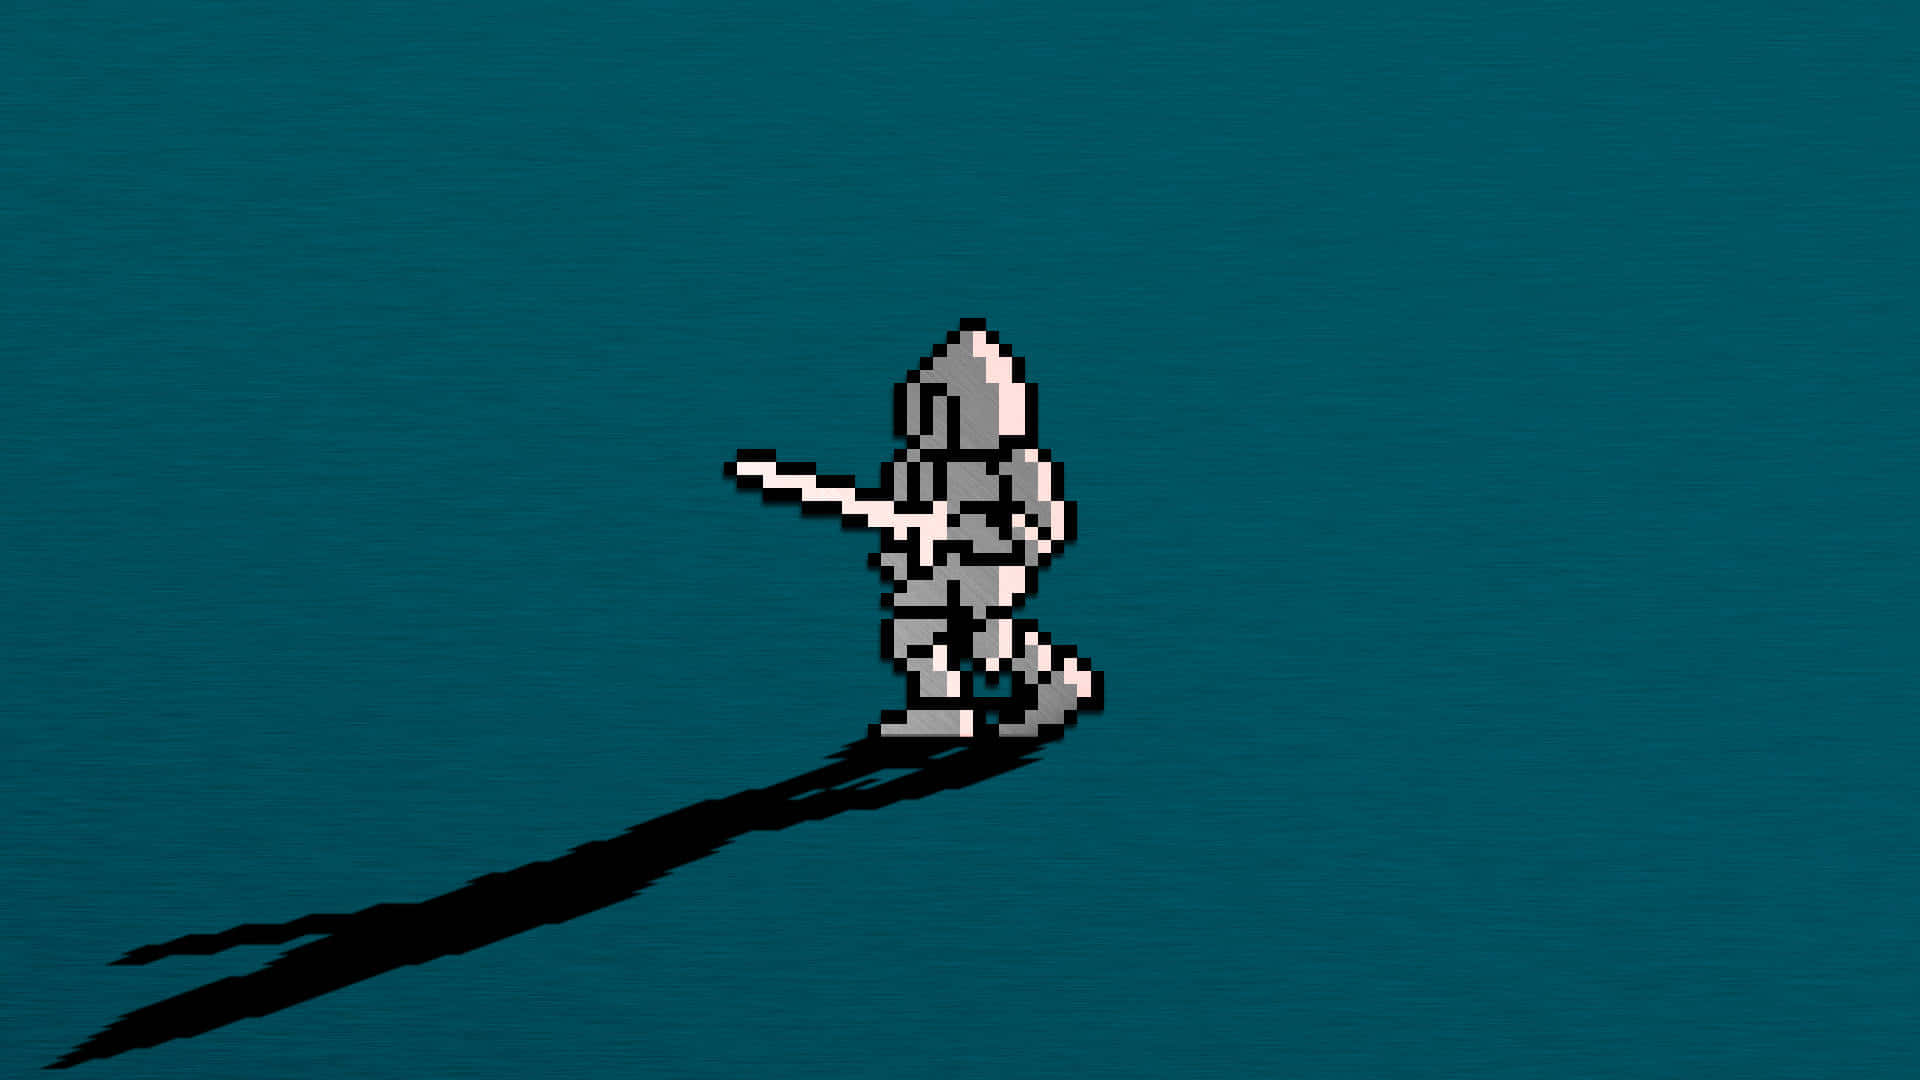 Pixel Art Of A Man Holding A Sword